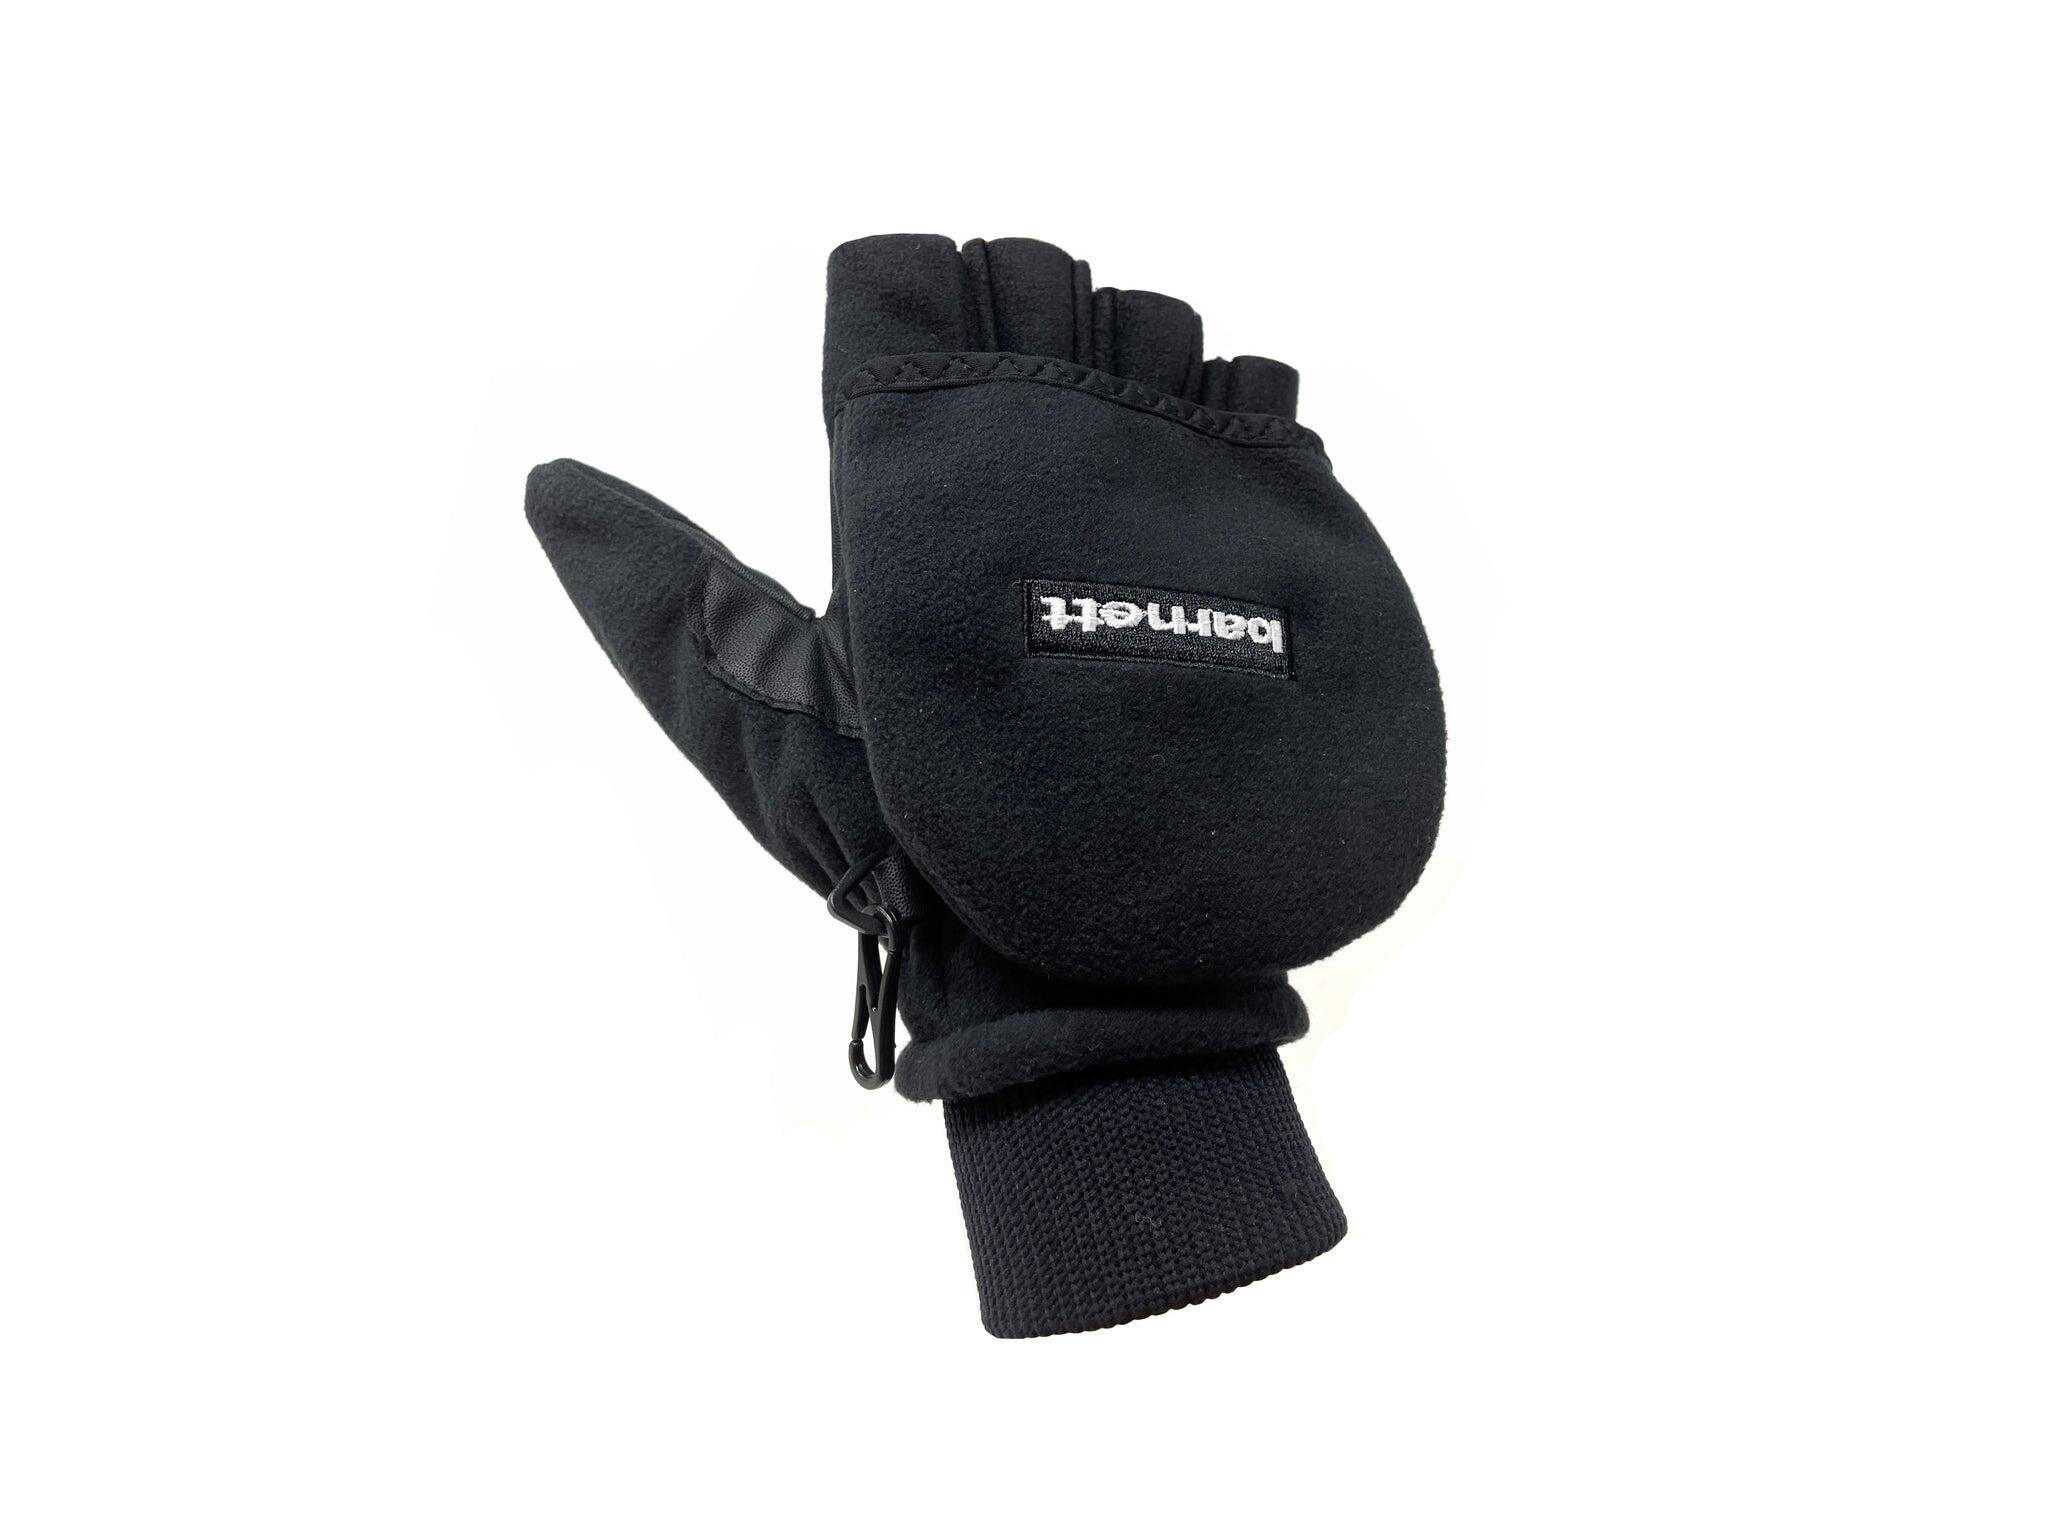  NBG-02 ski gloves 5/5